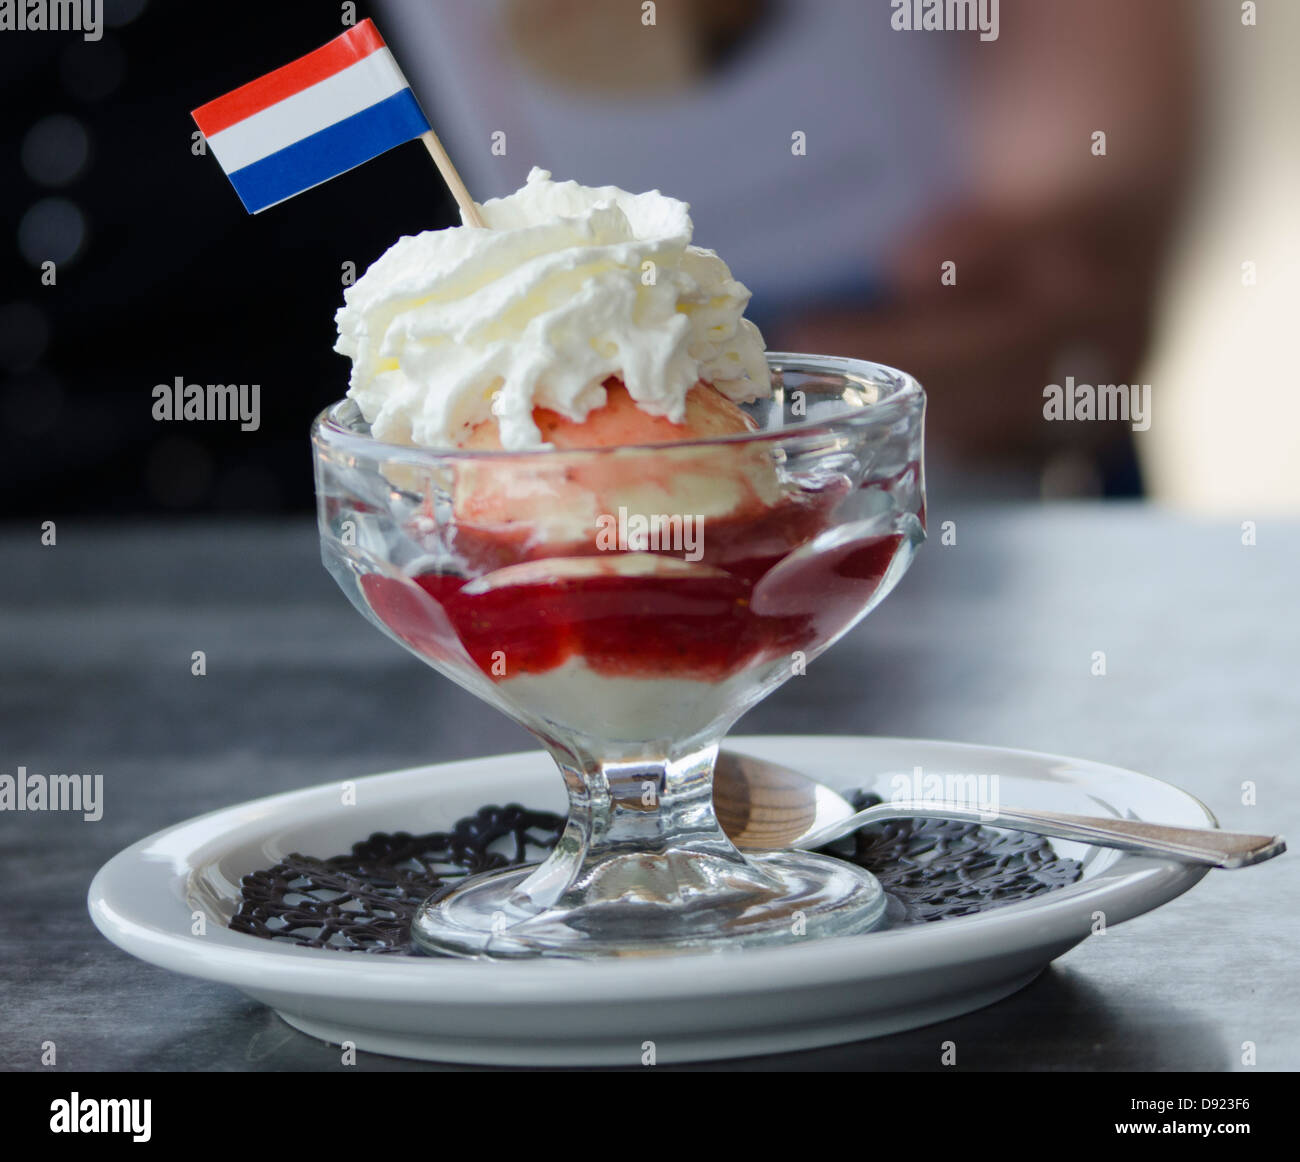 Eis mit niederländischer Flagge Stockfoto